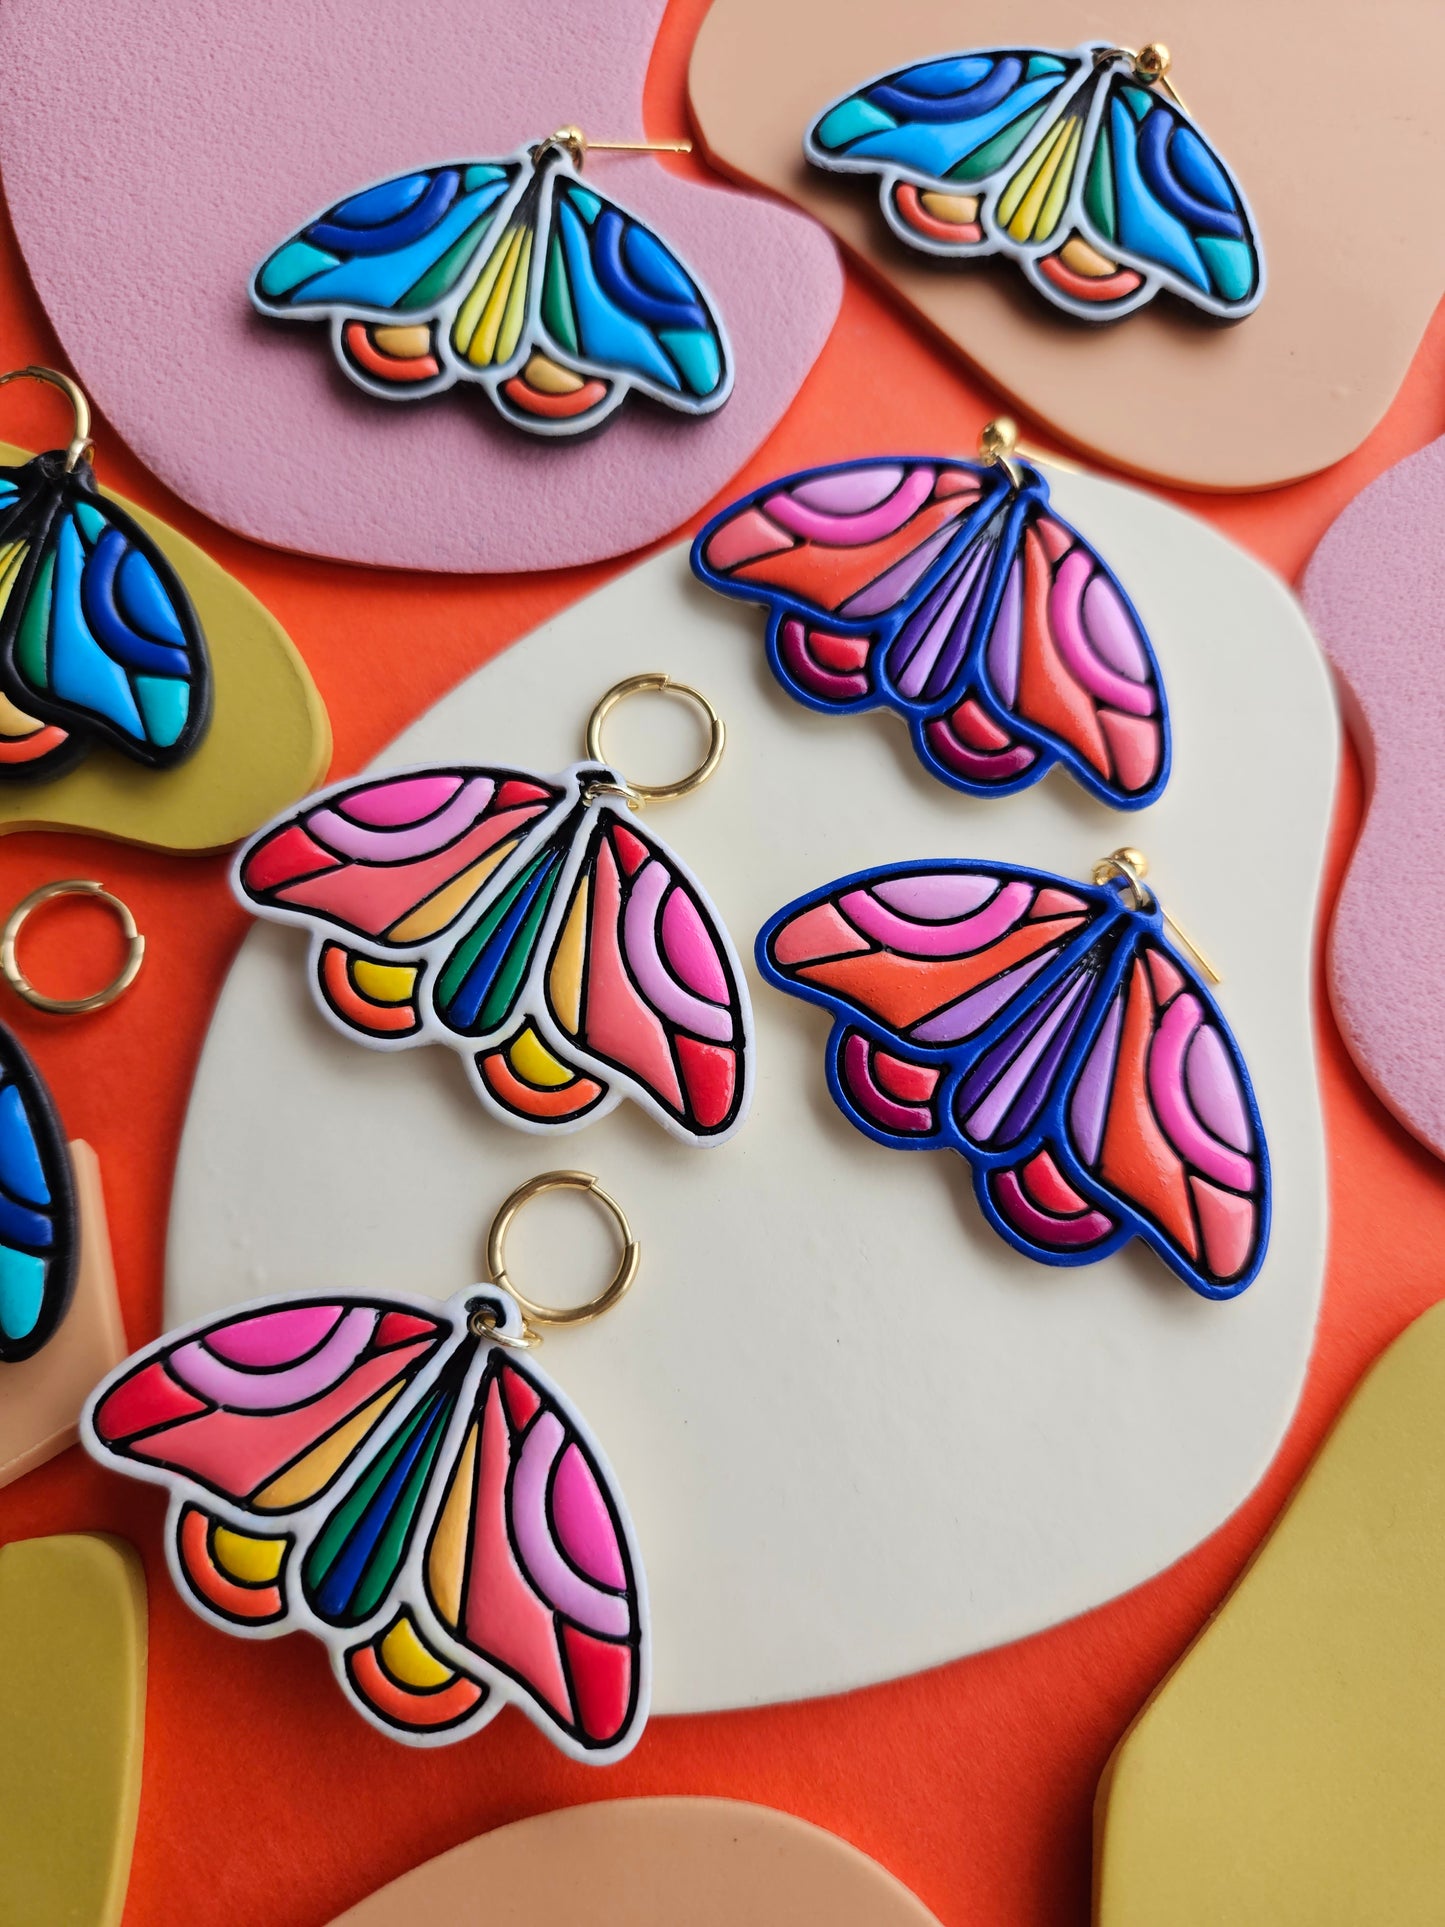 PRE ORDER "The Joyce" Emily Van Hoff Hand-Painted Rainbow Moth Collab Earrings